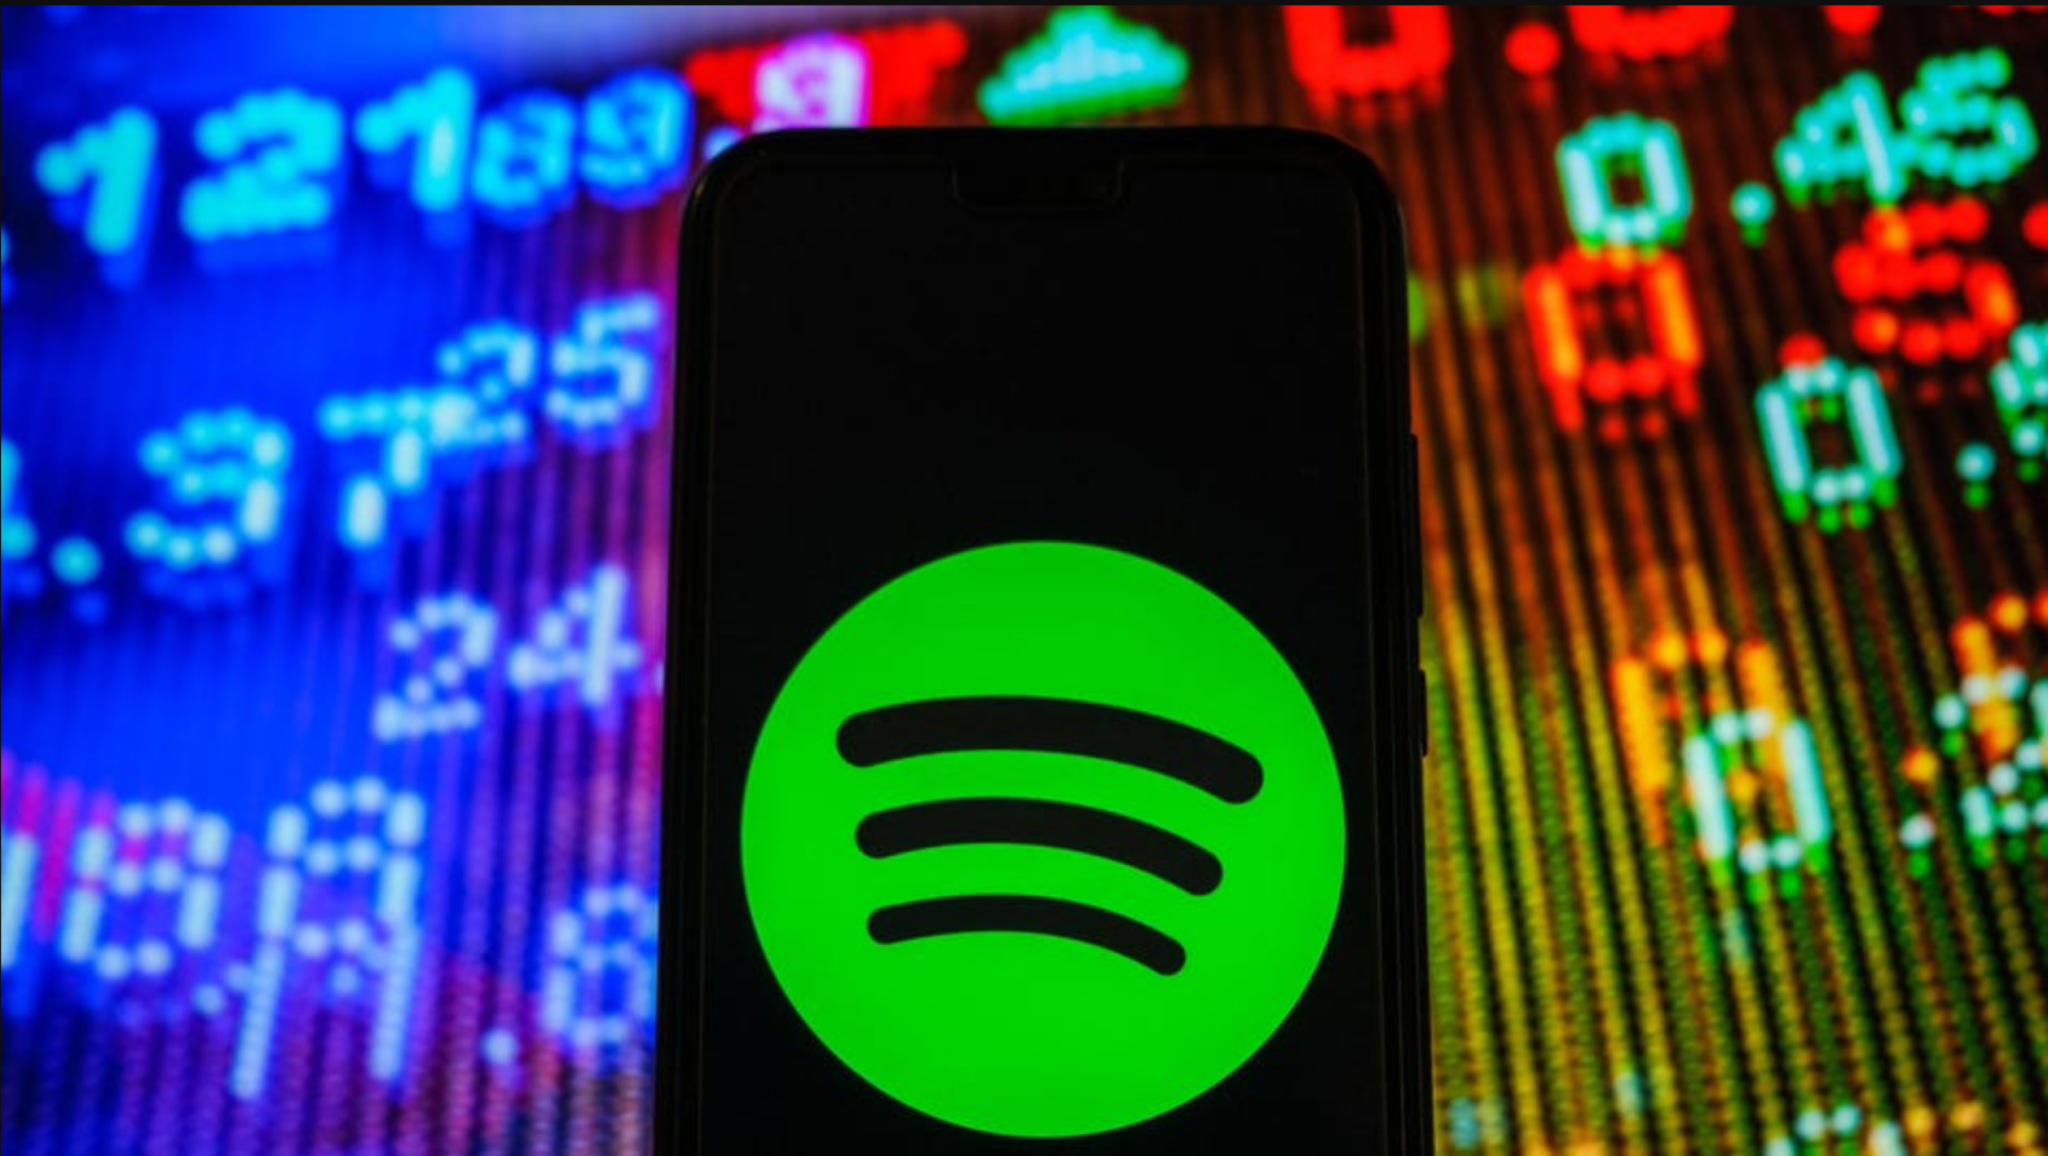 Spotify jde ve stopách řady technologických společností. Propustí 600 lidí